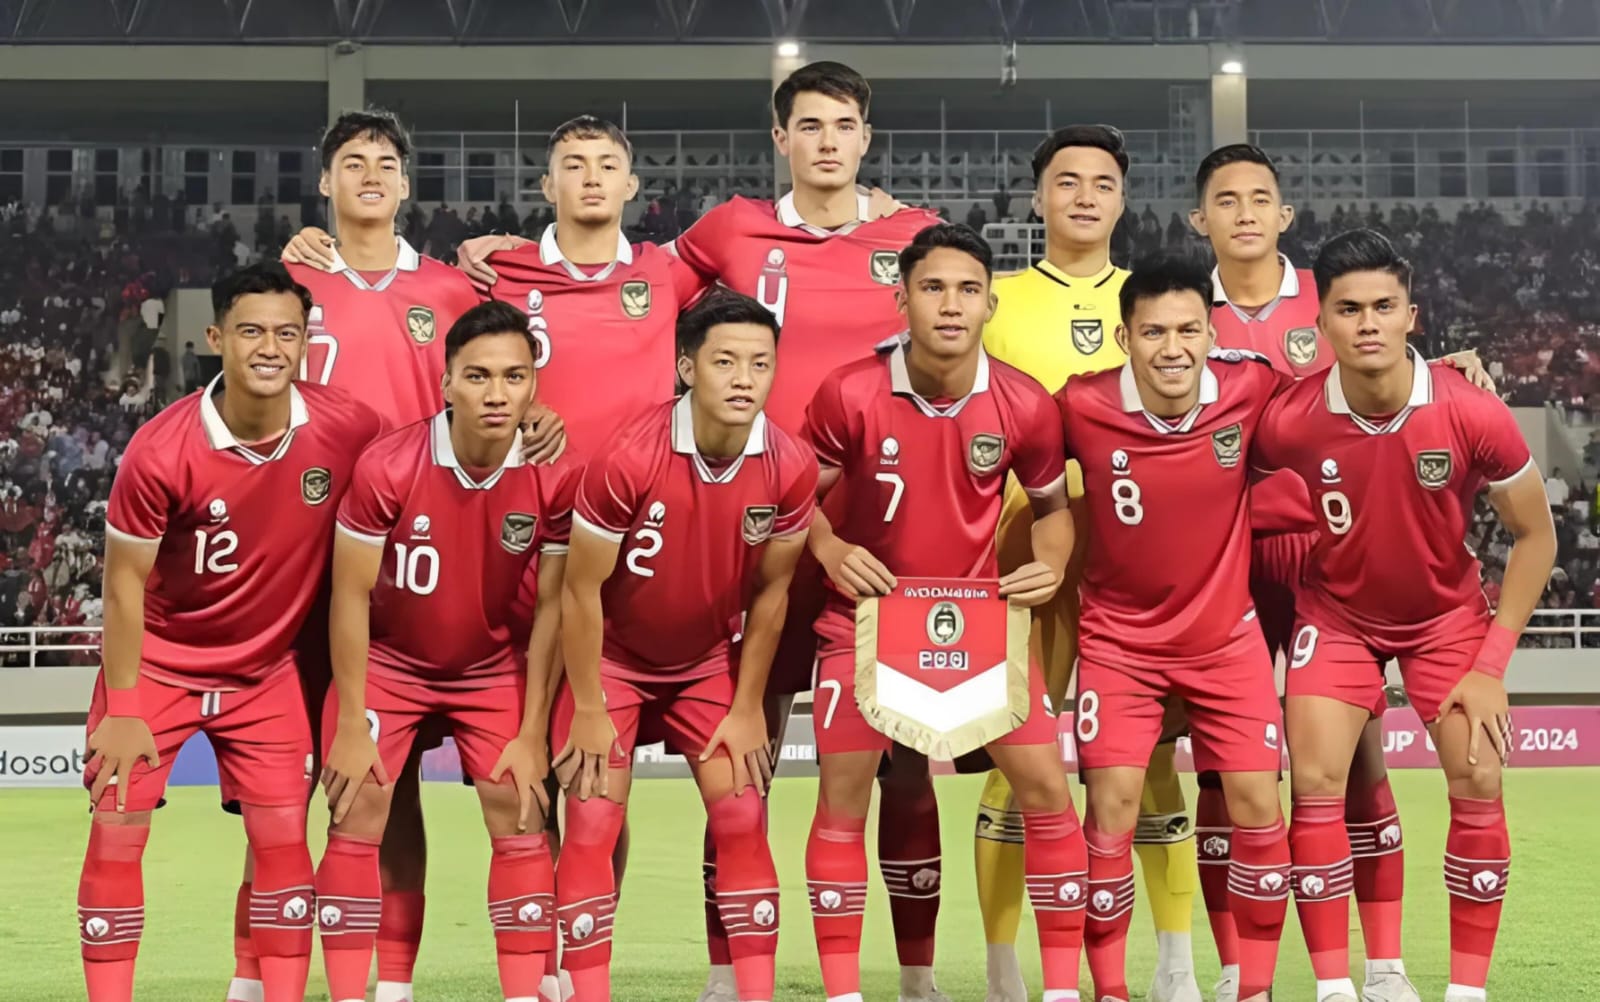 Timnas Indonesia U-23 Bakal Duel Lawan Guinea untuk Merebutkan Tiket Terakhir ke Olimpiade